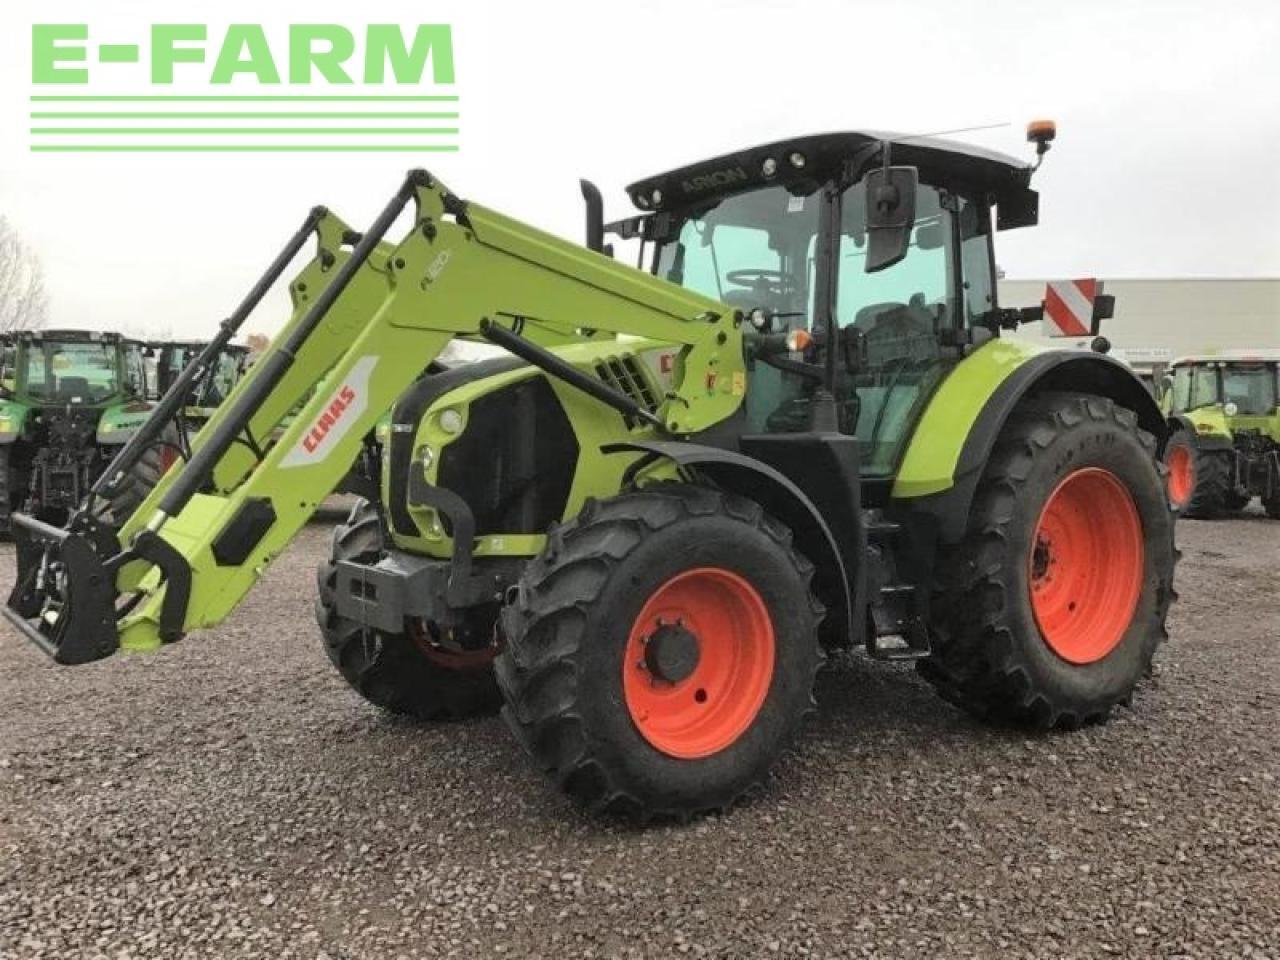 Farm tractor CLAAS arion 530 st4 hexa